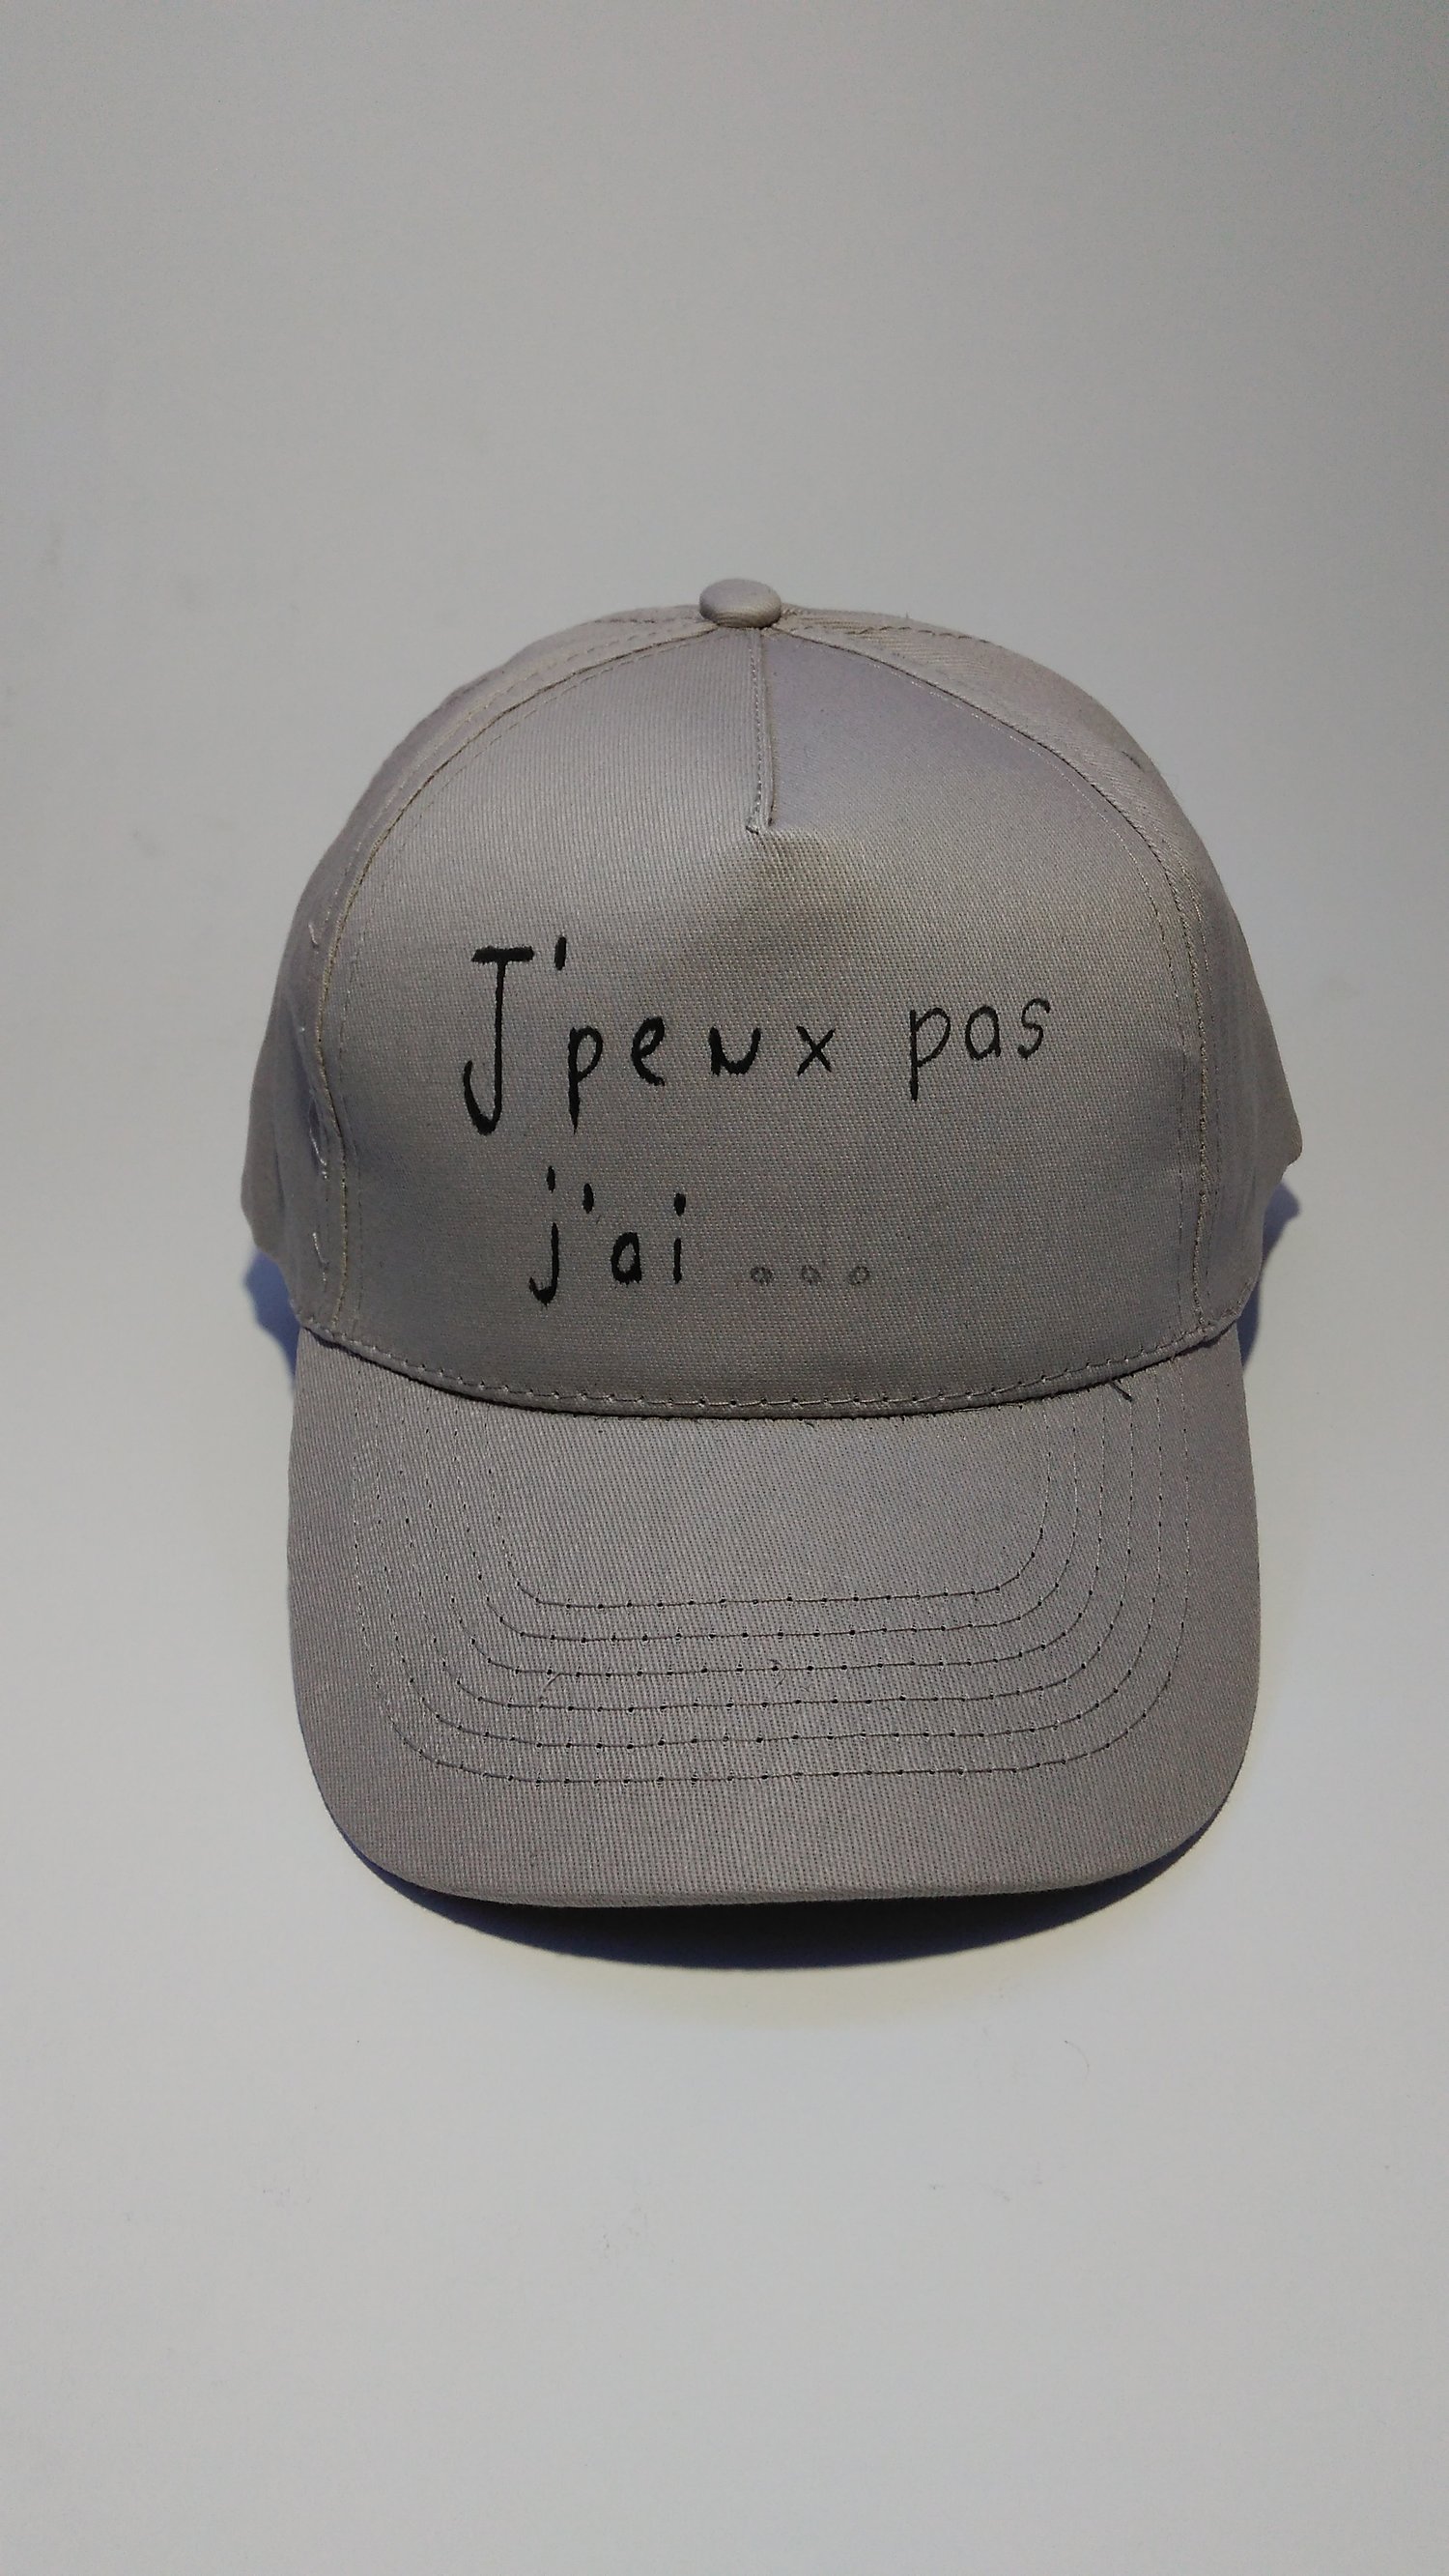 Image of casquette "J'peux pas j'ai..."